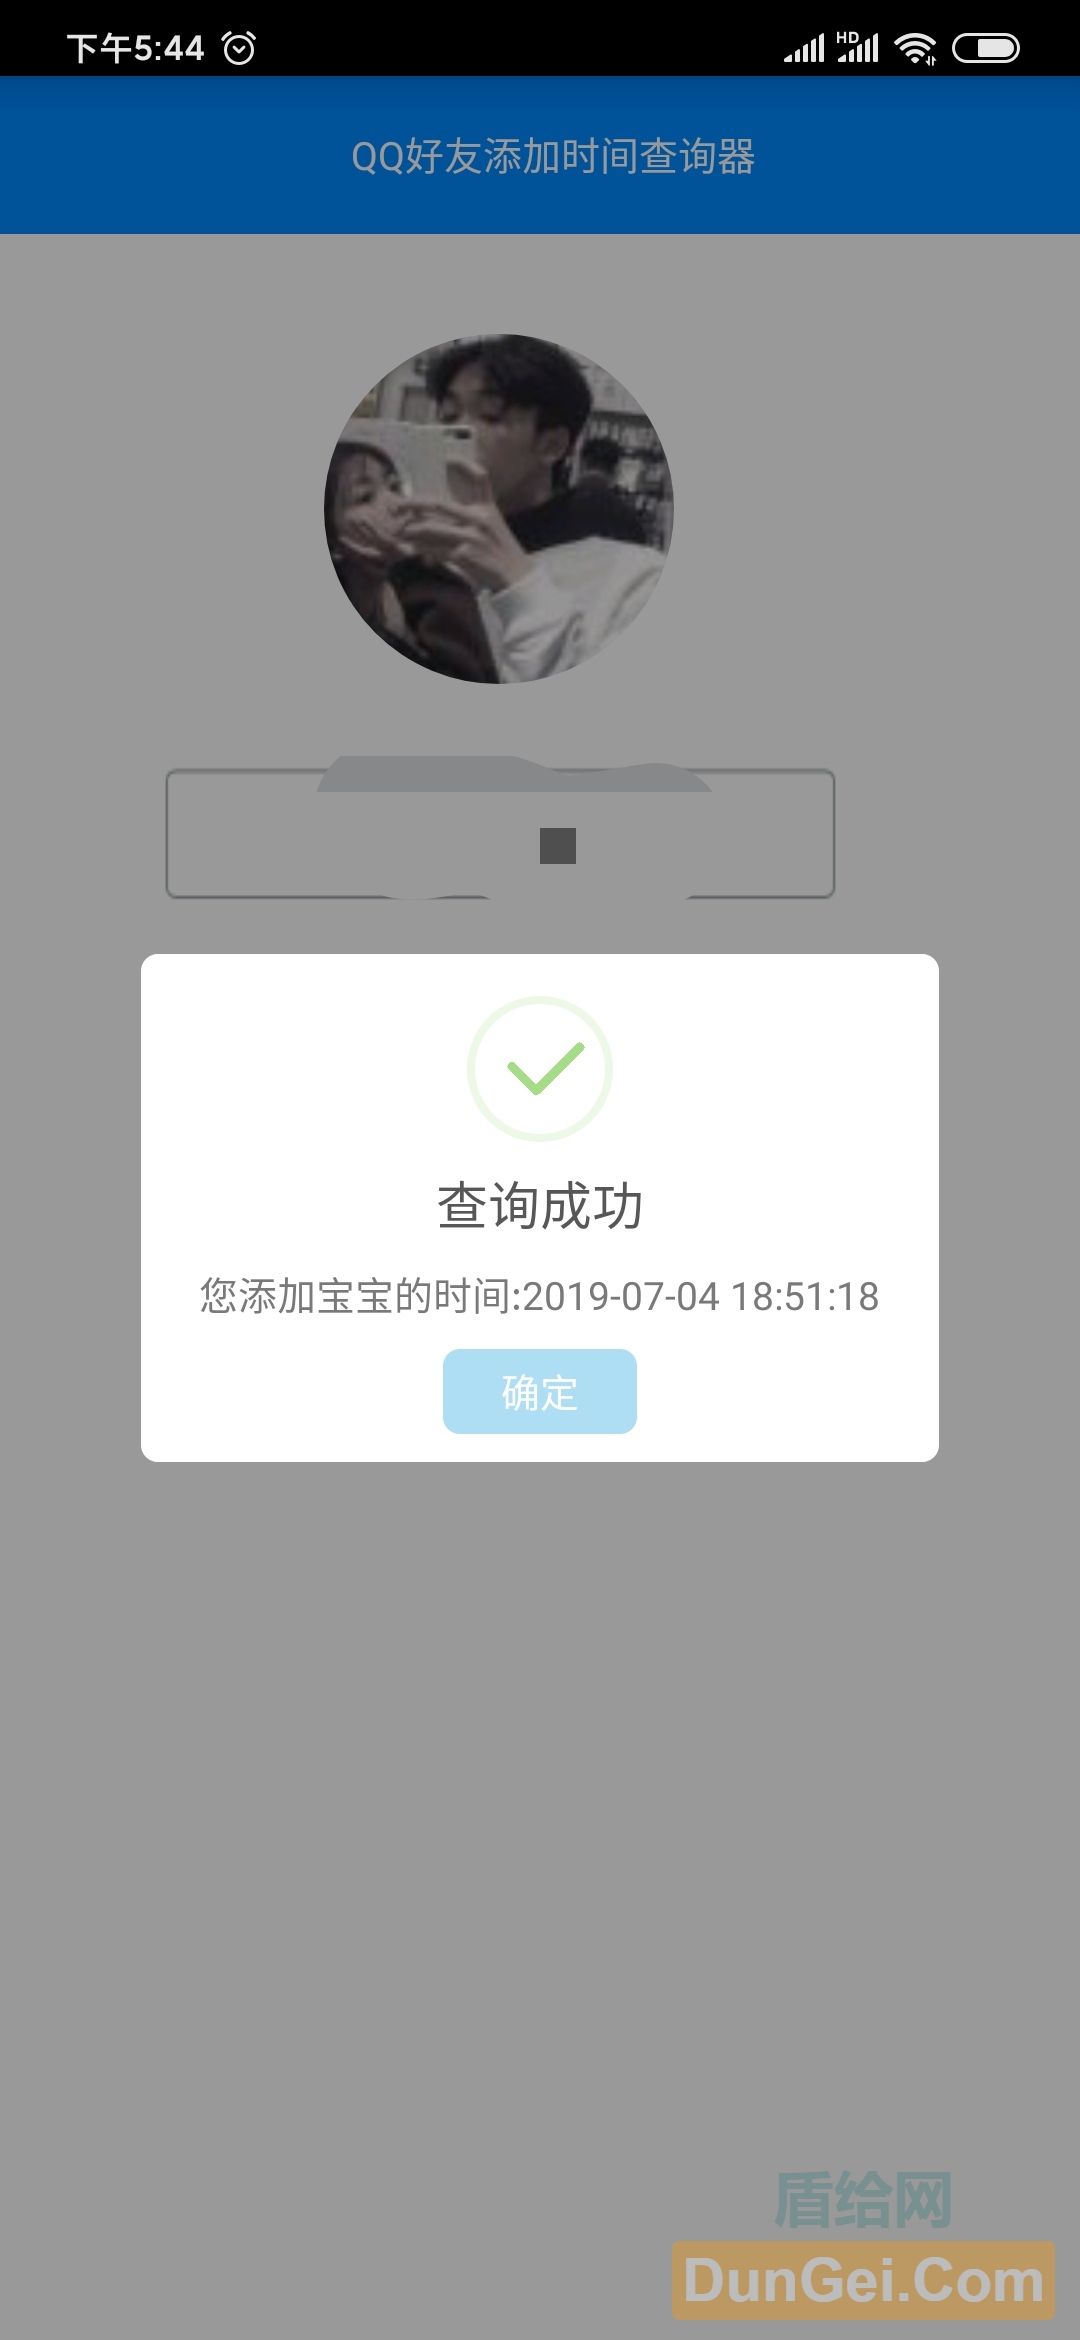 [安卓android]QQ好友添加时间查询器-度崩网-几度崩溃